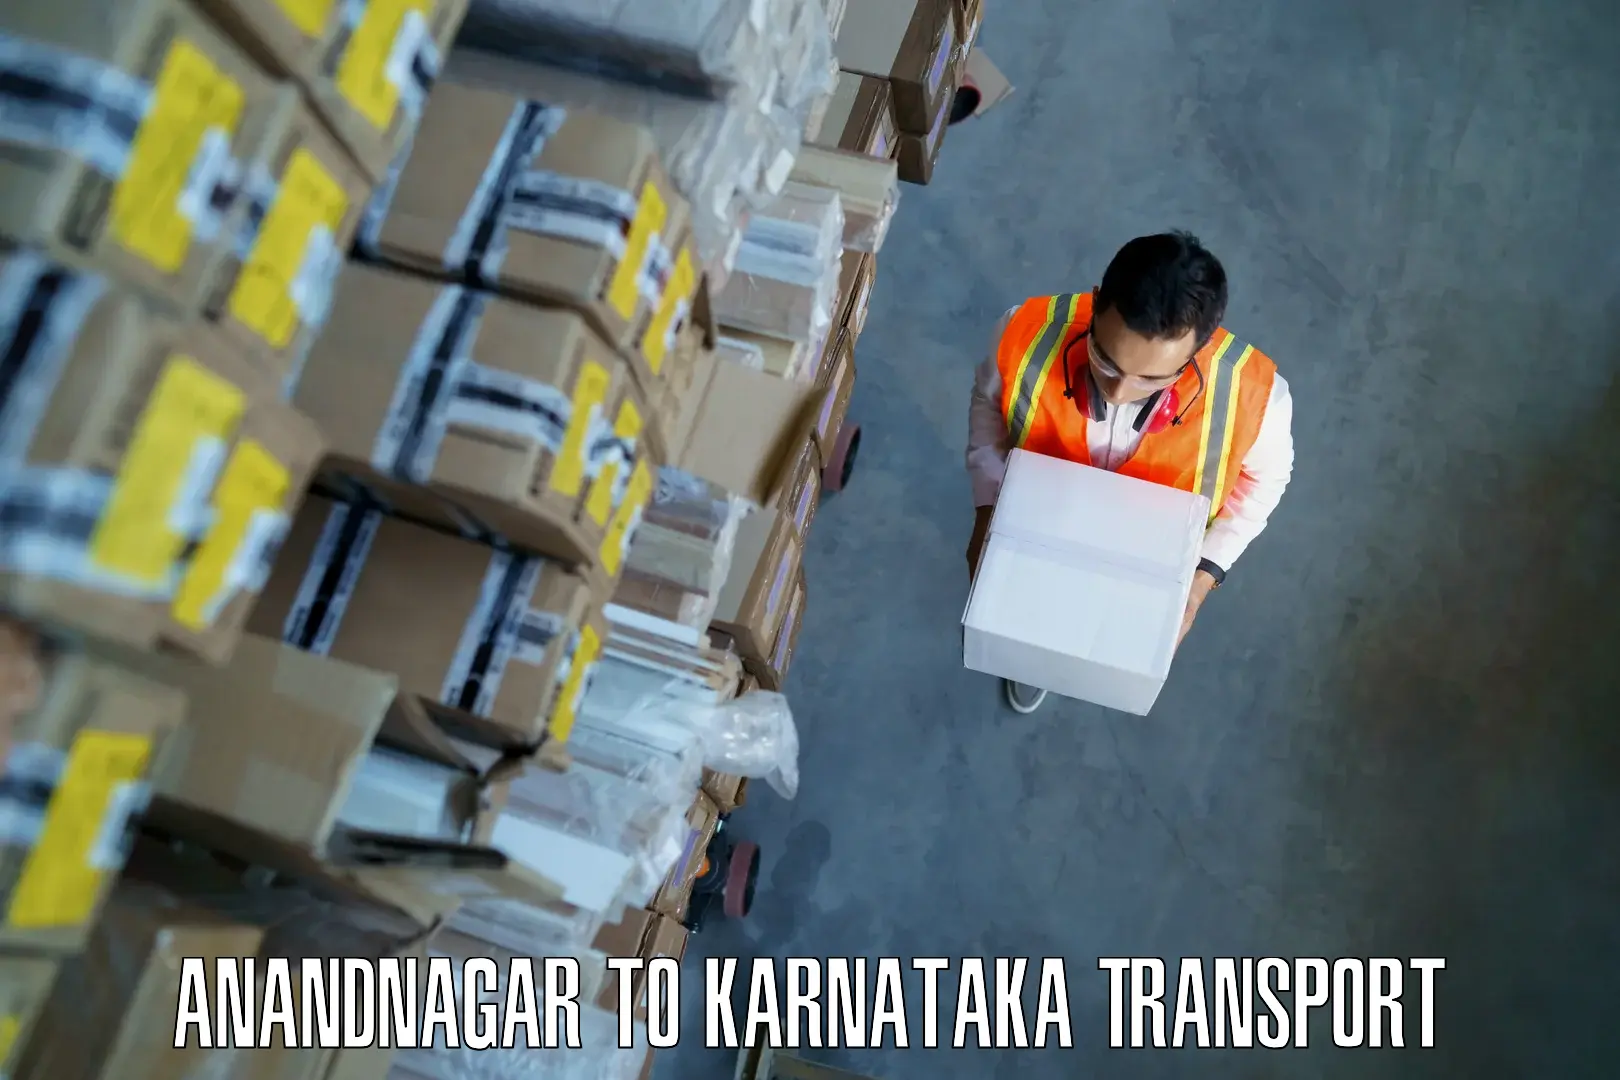 Transport in sharing Anandnagar to Kanakapura